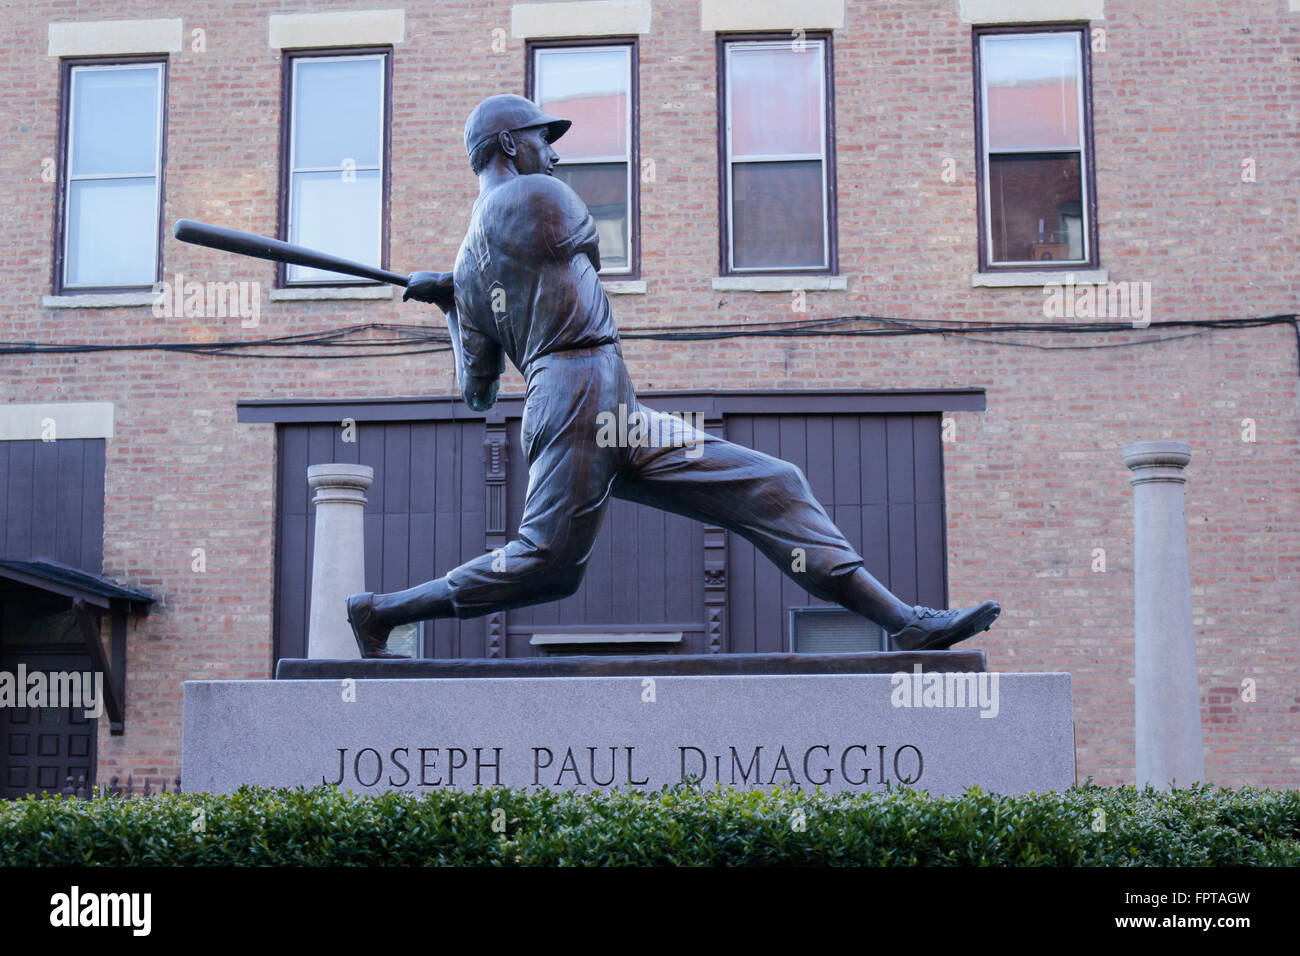 Joe DiMaggio statue. Chicago, Illinois. Stock Photo